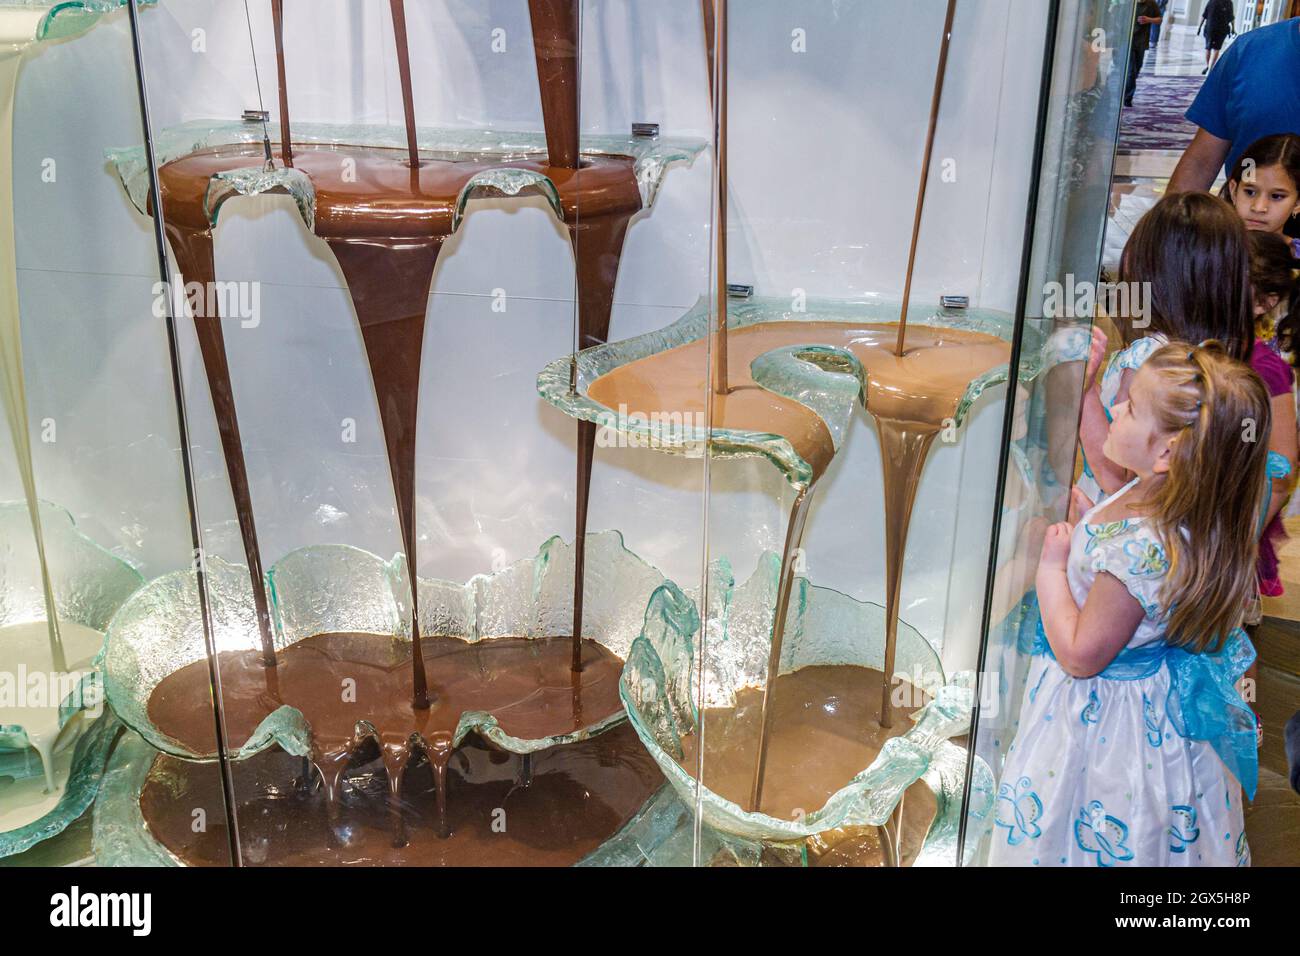 Las Vegas Nevada, il casinò dell'hotel Strip Bellagio, Jean-Philippe Patisserie, la più grande fontana di cioccolato del mondo, ragazza che guarda il bambino Foto Stock